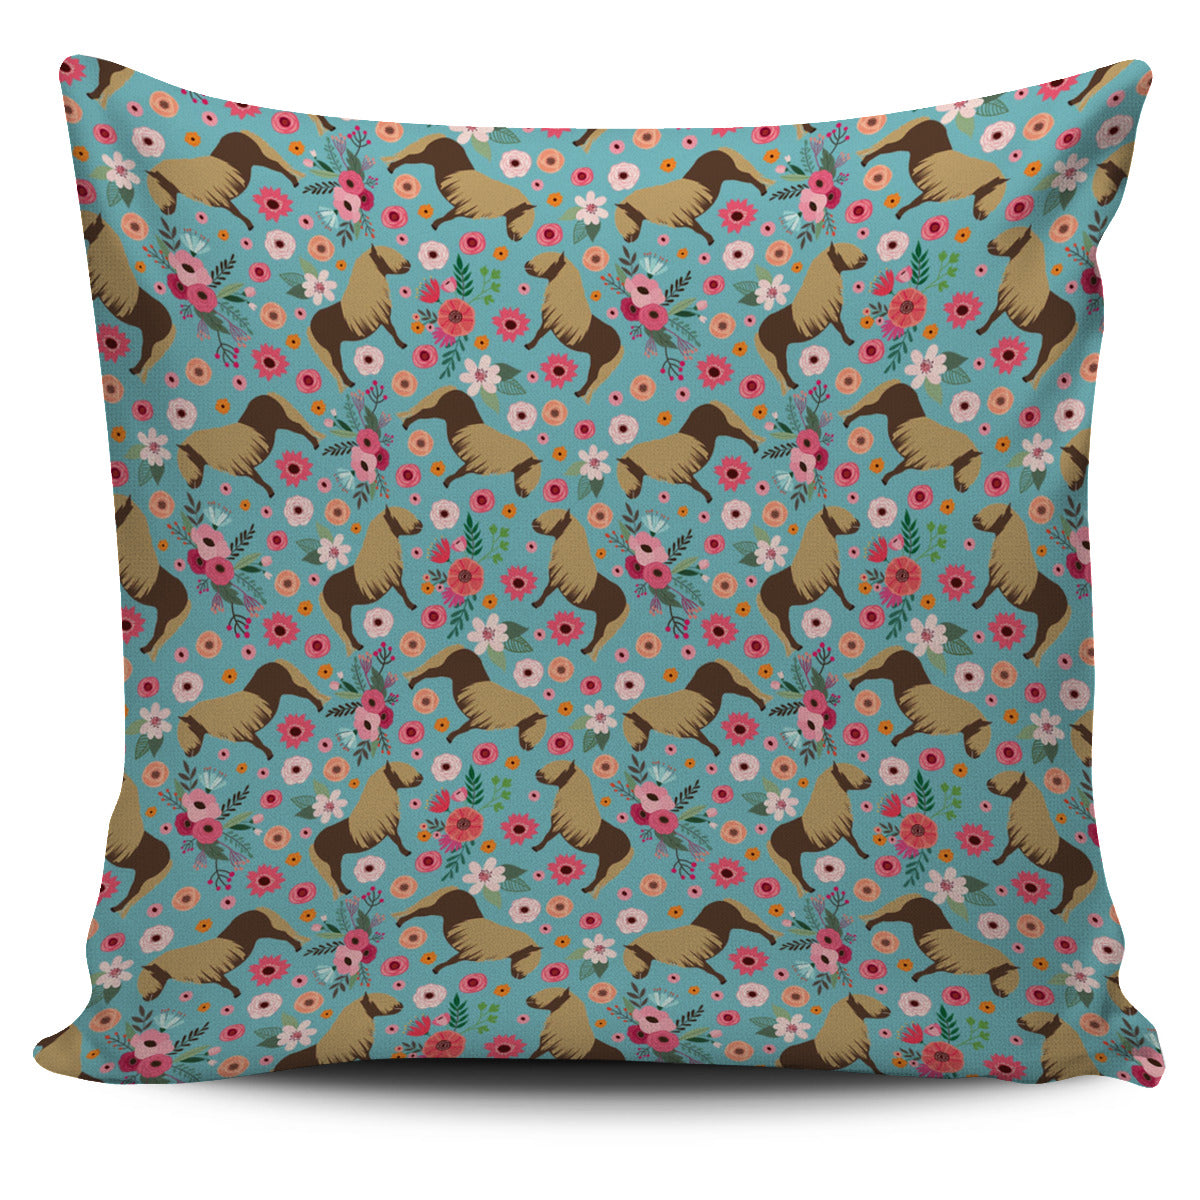 Shetland Pony Flower Pillow Cover